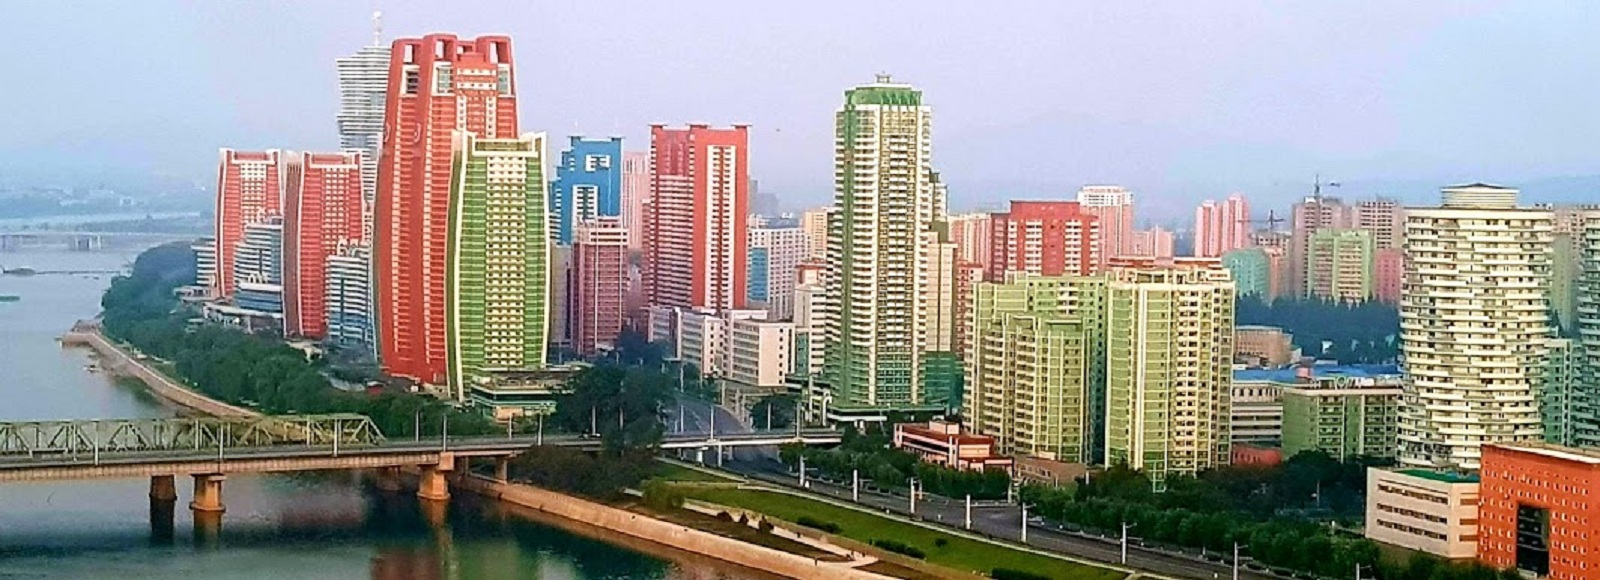 Ofertas de Traslados en Pyongyang. Traslados económicos en Pyongyang 